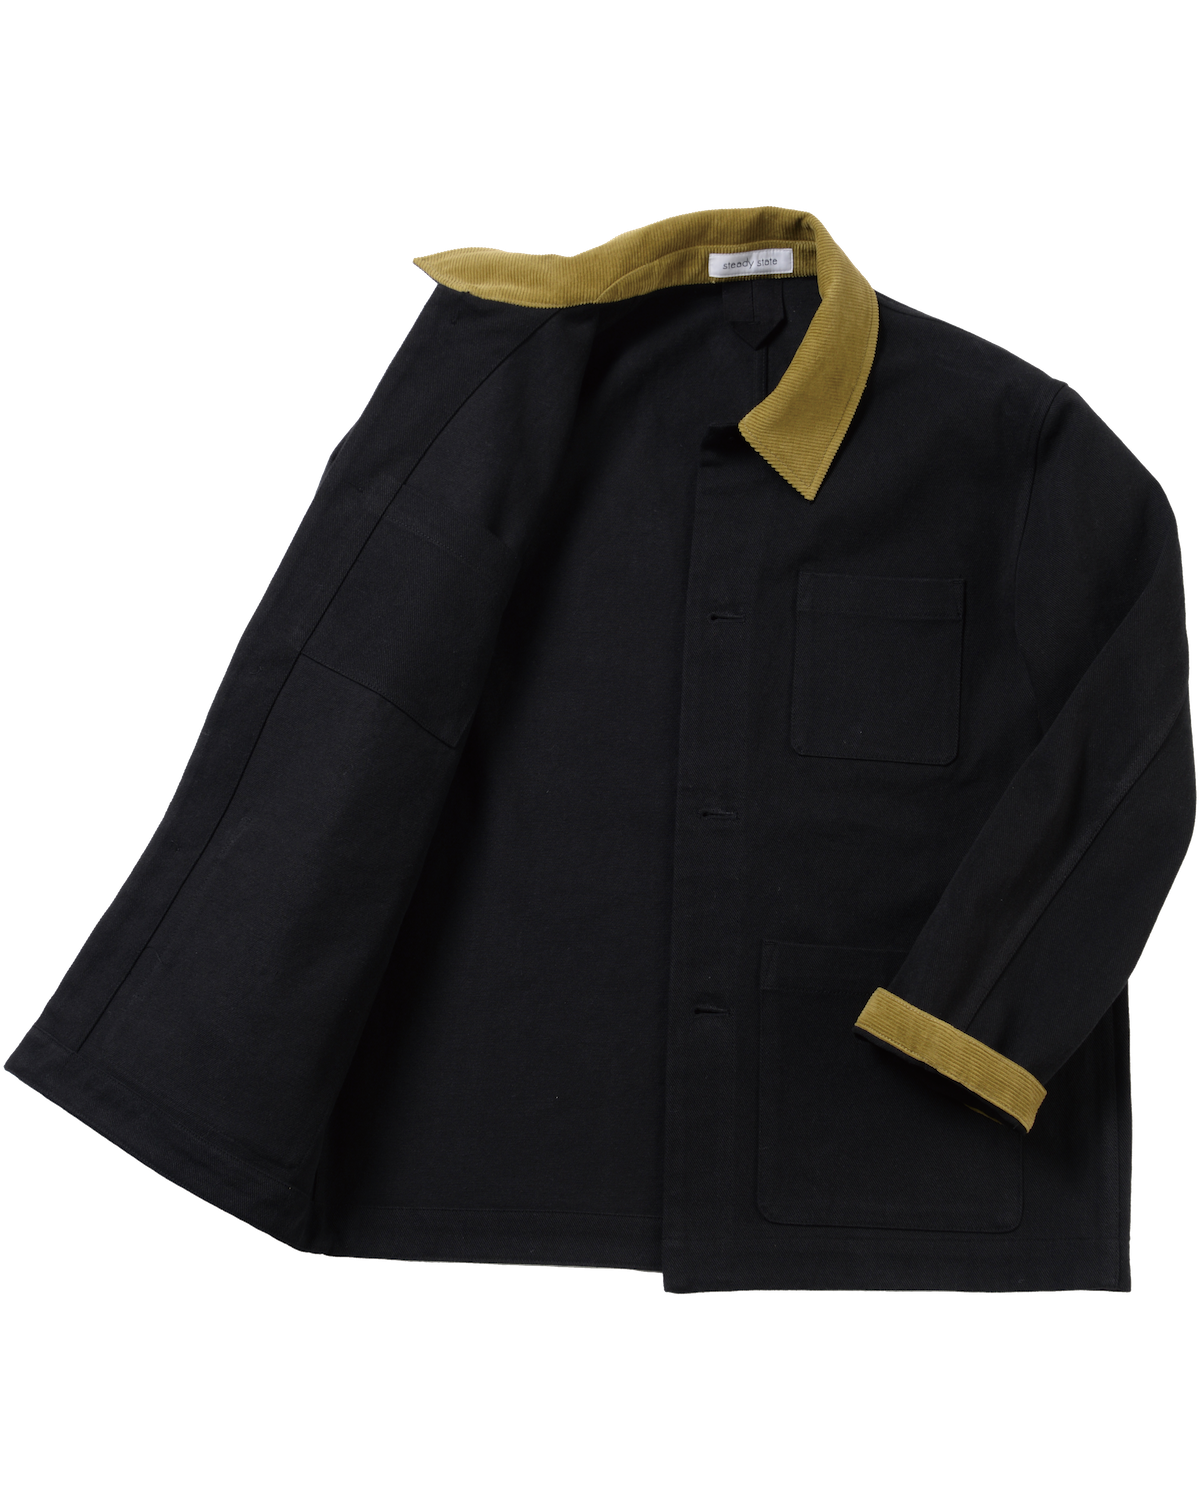 Chore Jacket Black Corduroy